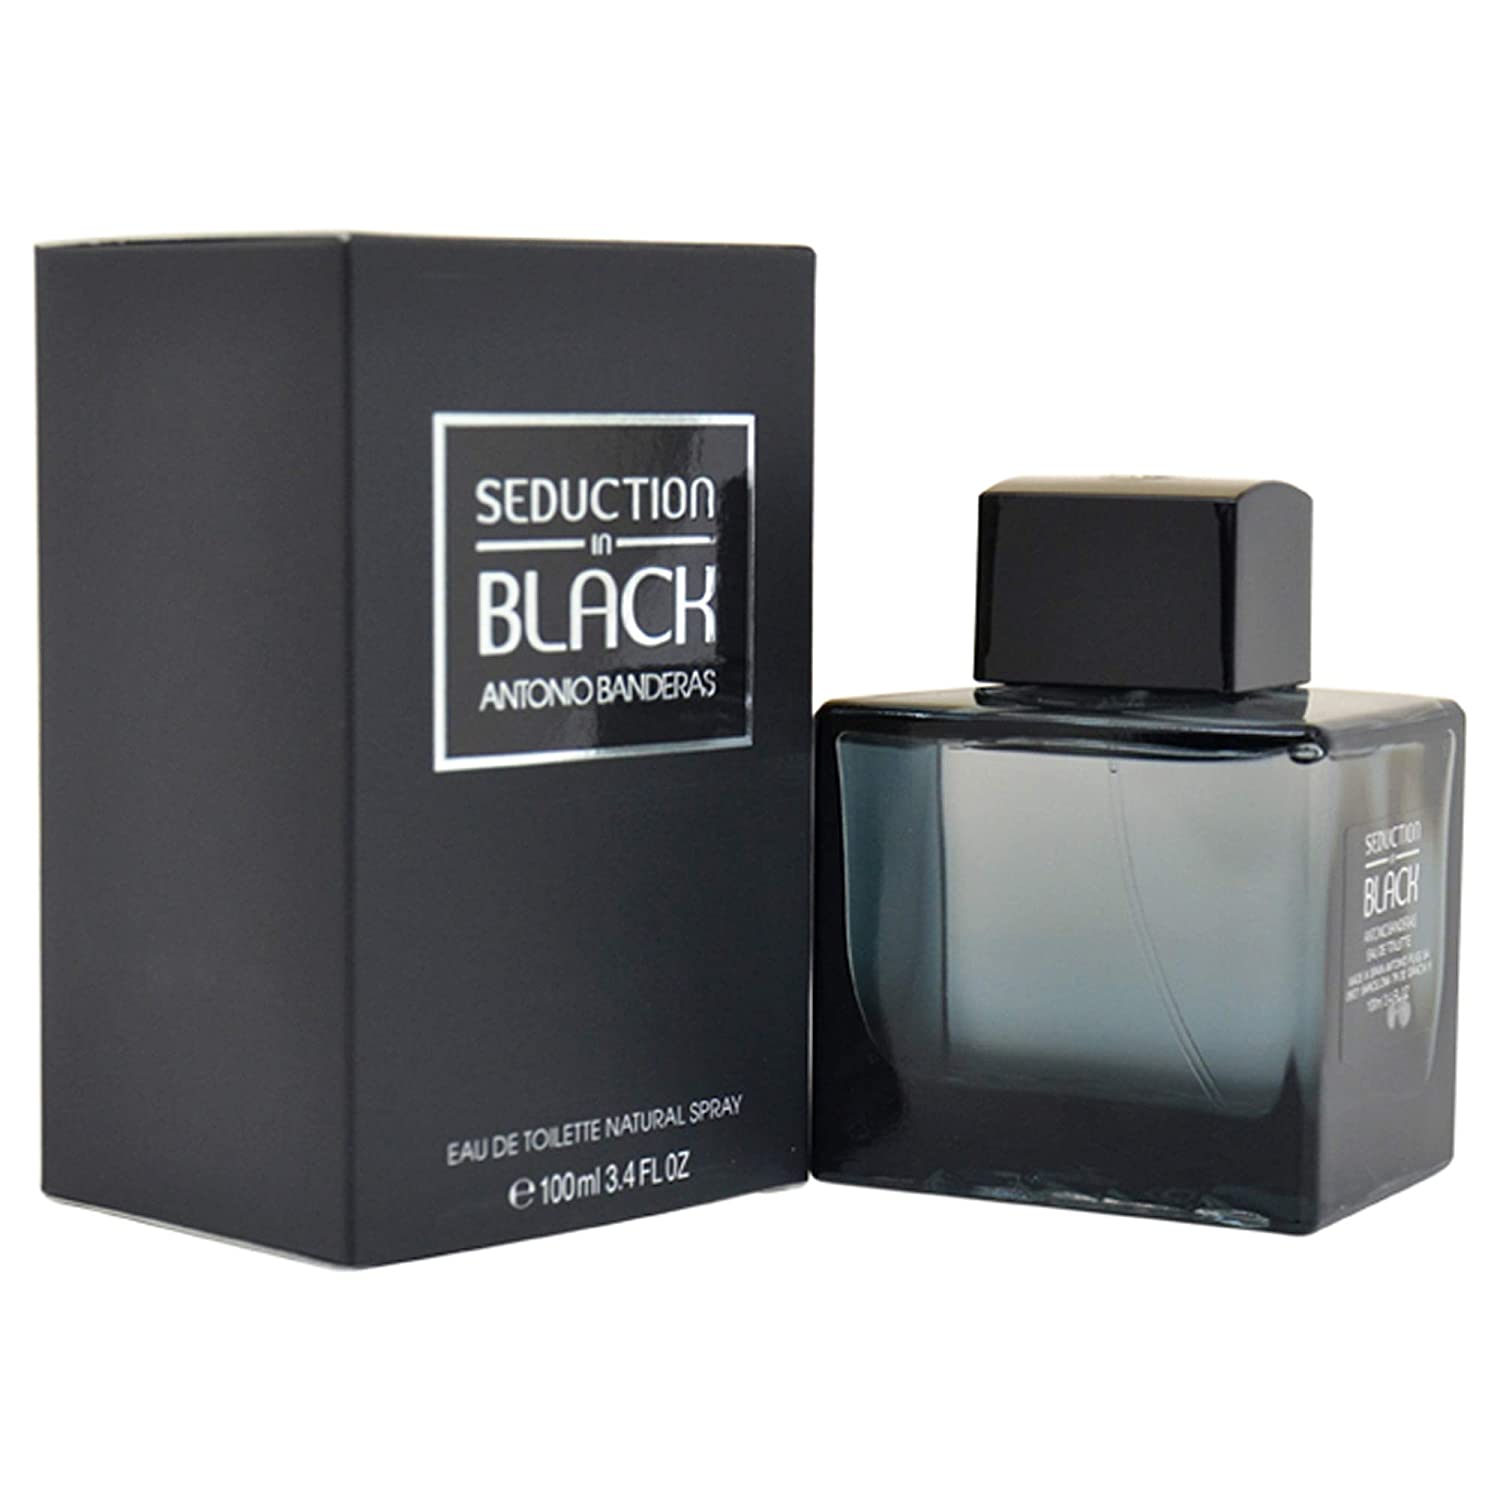 Perfume para Hombre Antonio Banderas Black Seduction EDT